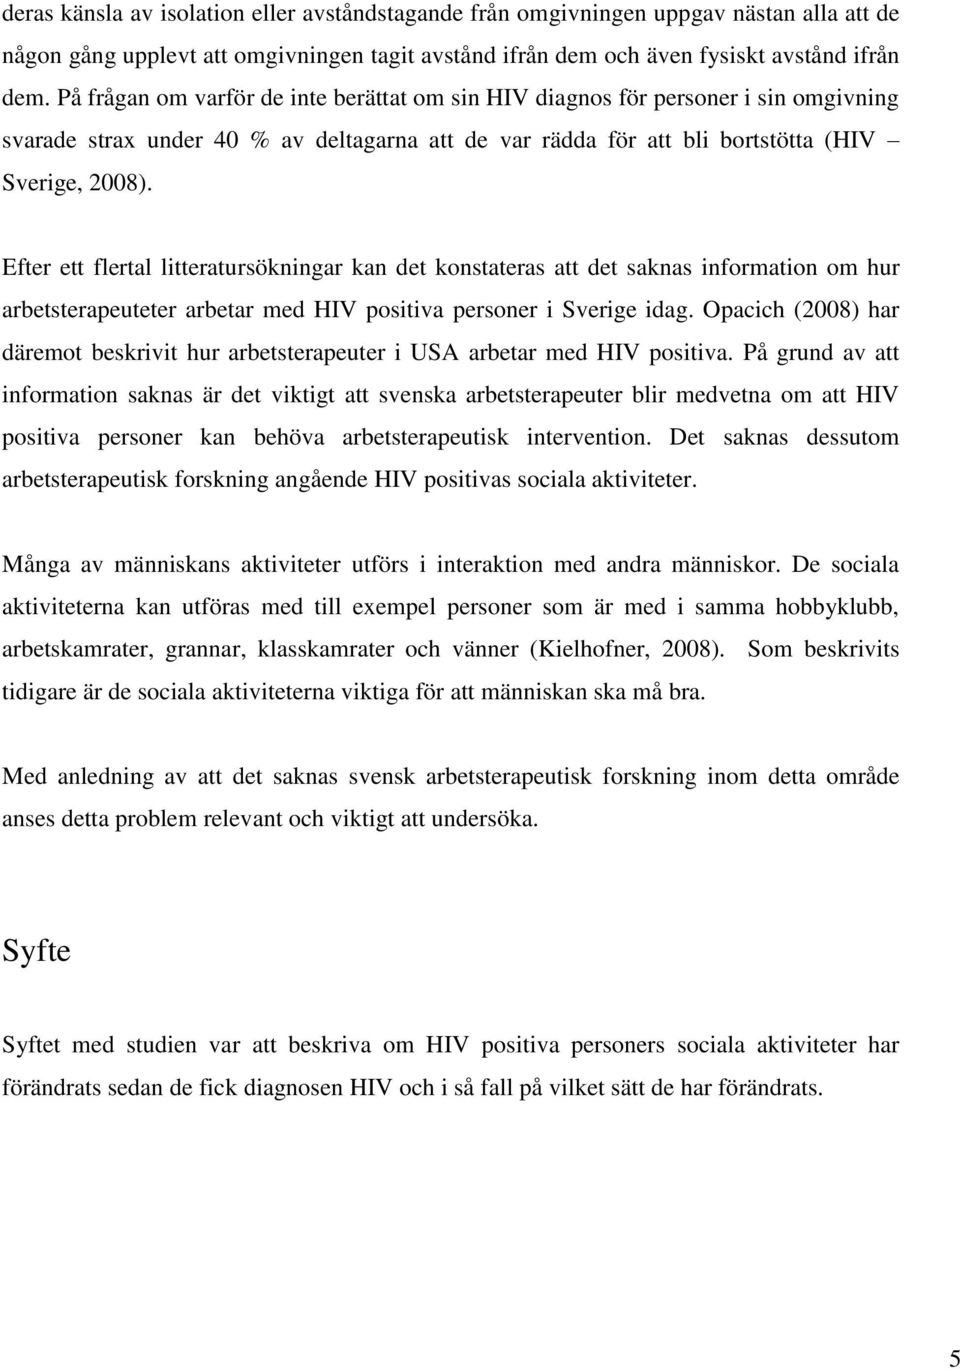 Efter ett flertal litteratursökningar kan det konstateras att det saknas information om hur arbetsterapeuteter arbetar med HIV positiva personer i Sverige idag.